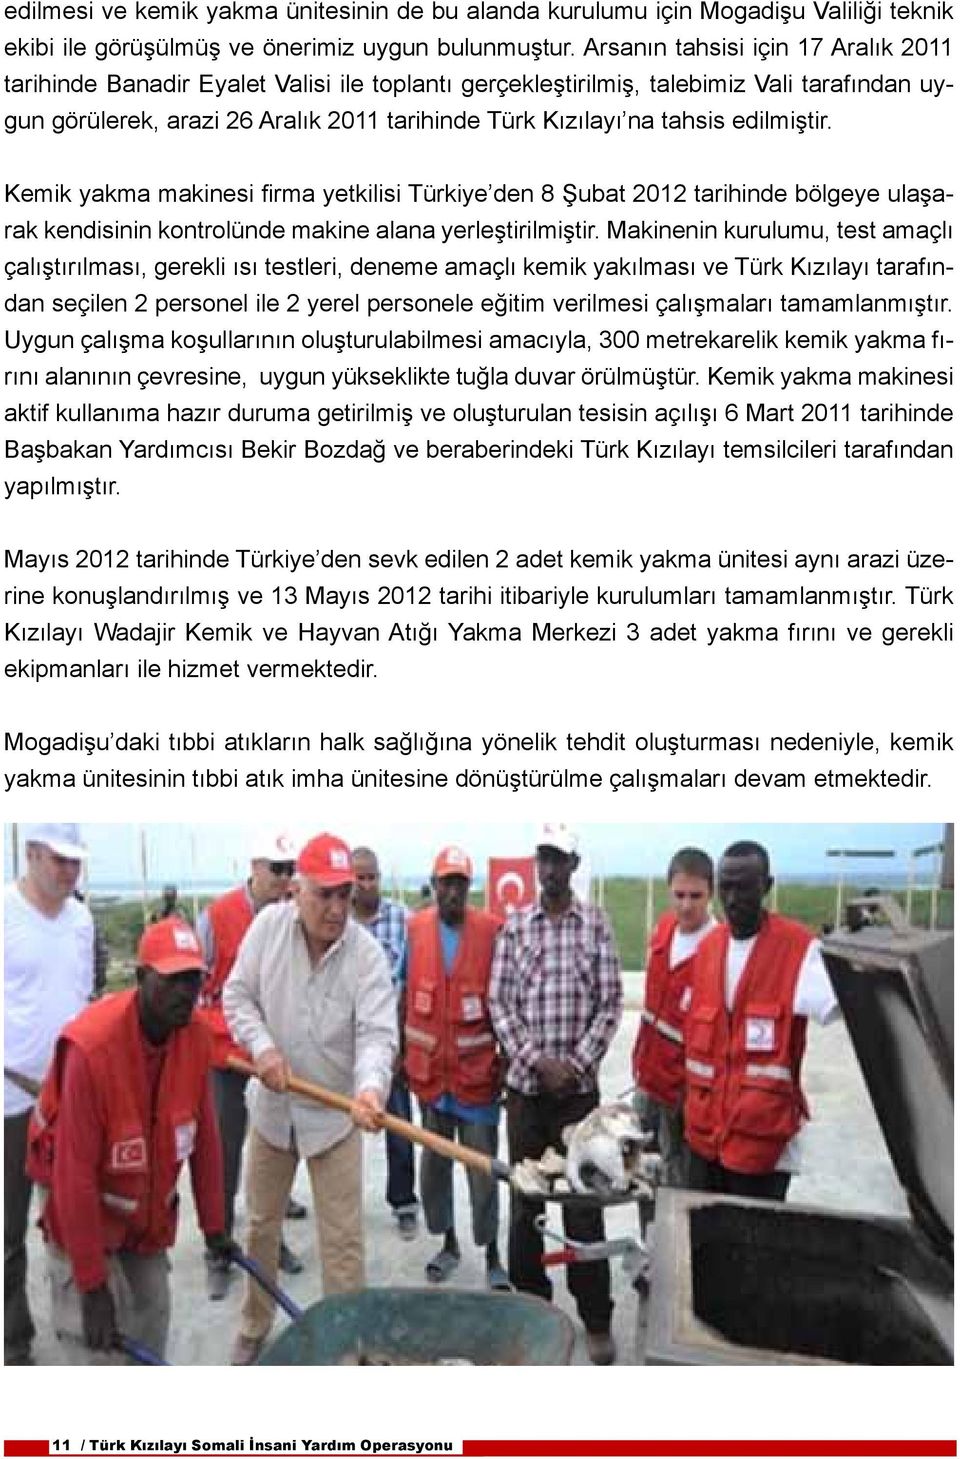 edilmiştir. Kemik yakma makinesi firma yetkilisi Türkiye den 8 Şubat 2012 tarihinde bölgeye ulaşarak kendisinin kontrolünde makine alana yerleştirilmiştir.